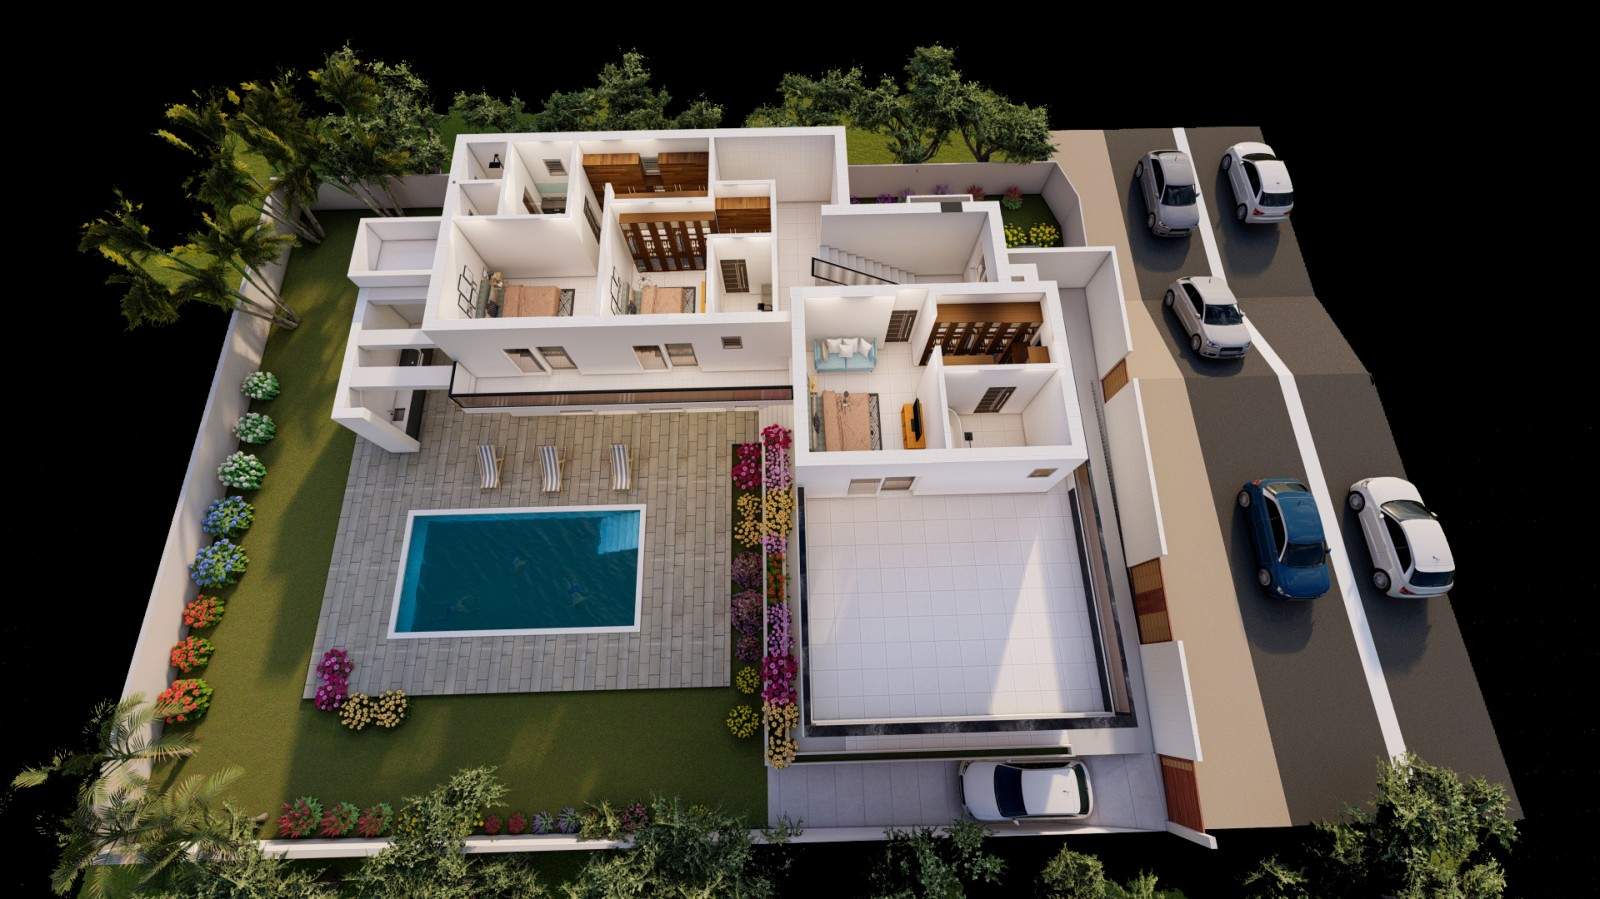 Villa de 4 dormitorios en construcción, en venta en Porto de Mós, Algarve_211034